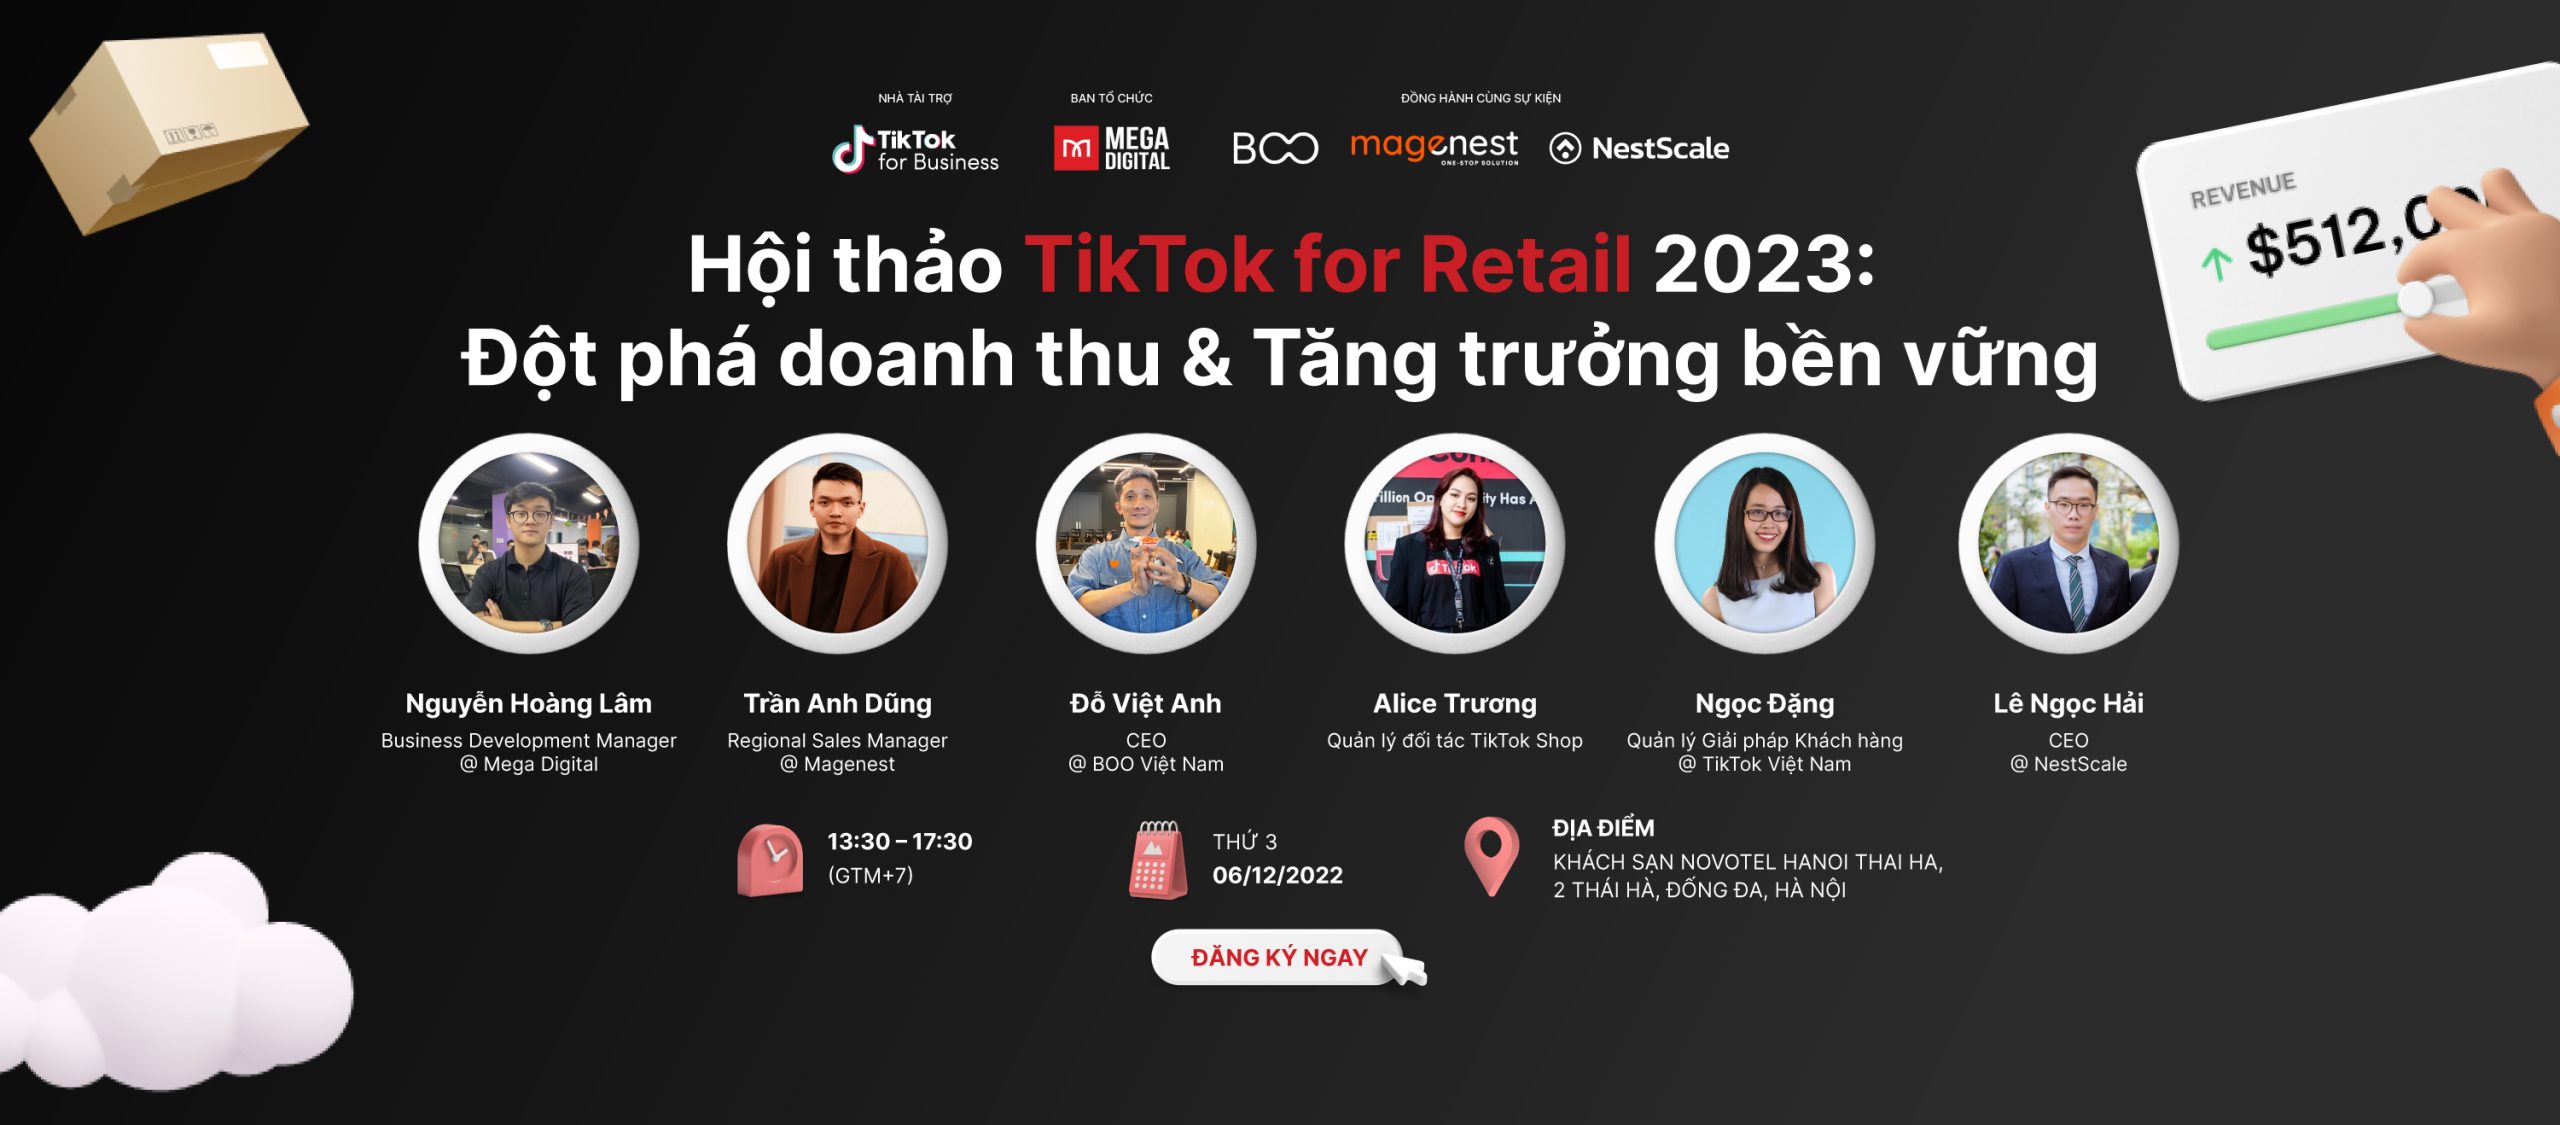 Hội thảo TikTok for retail 2023: Đột phá doanh thu - Tăng trưởng bền vững